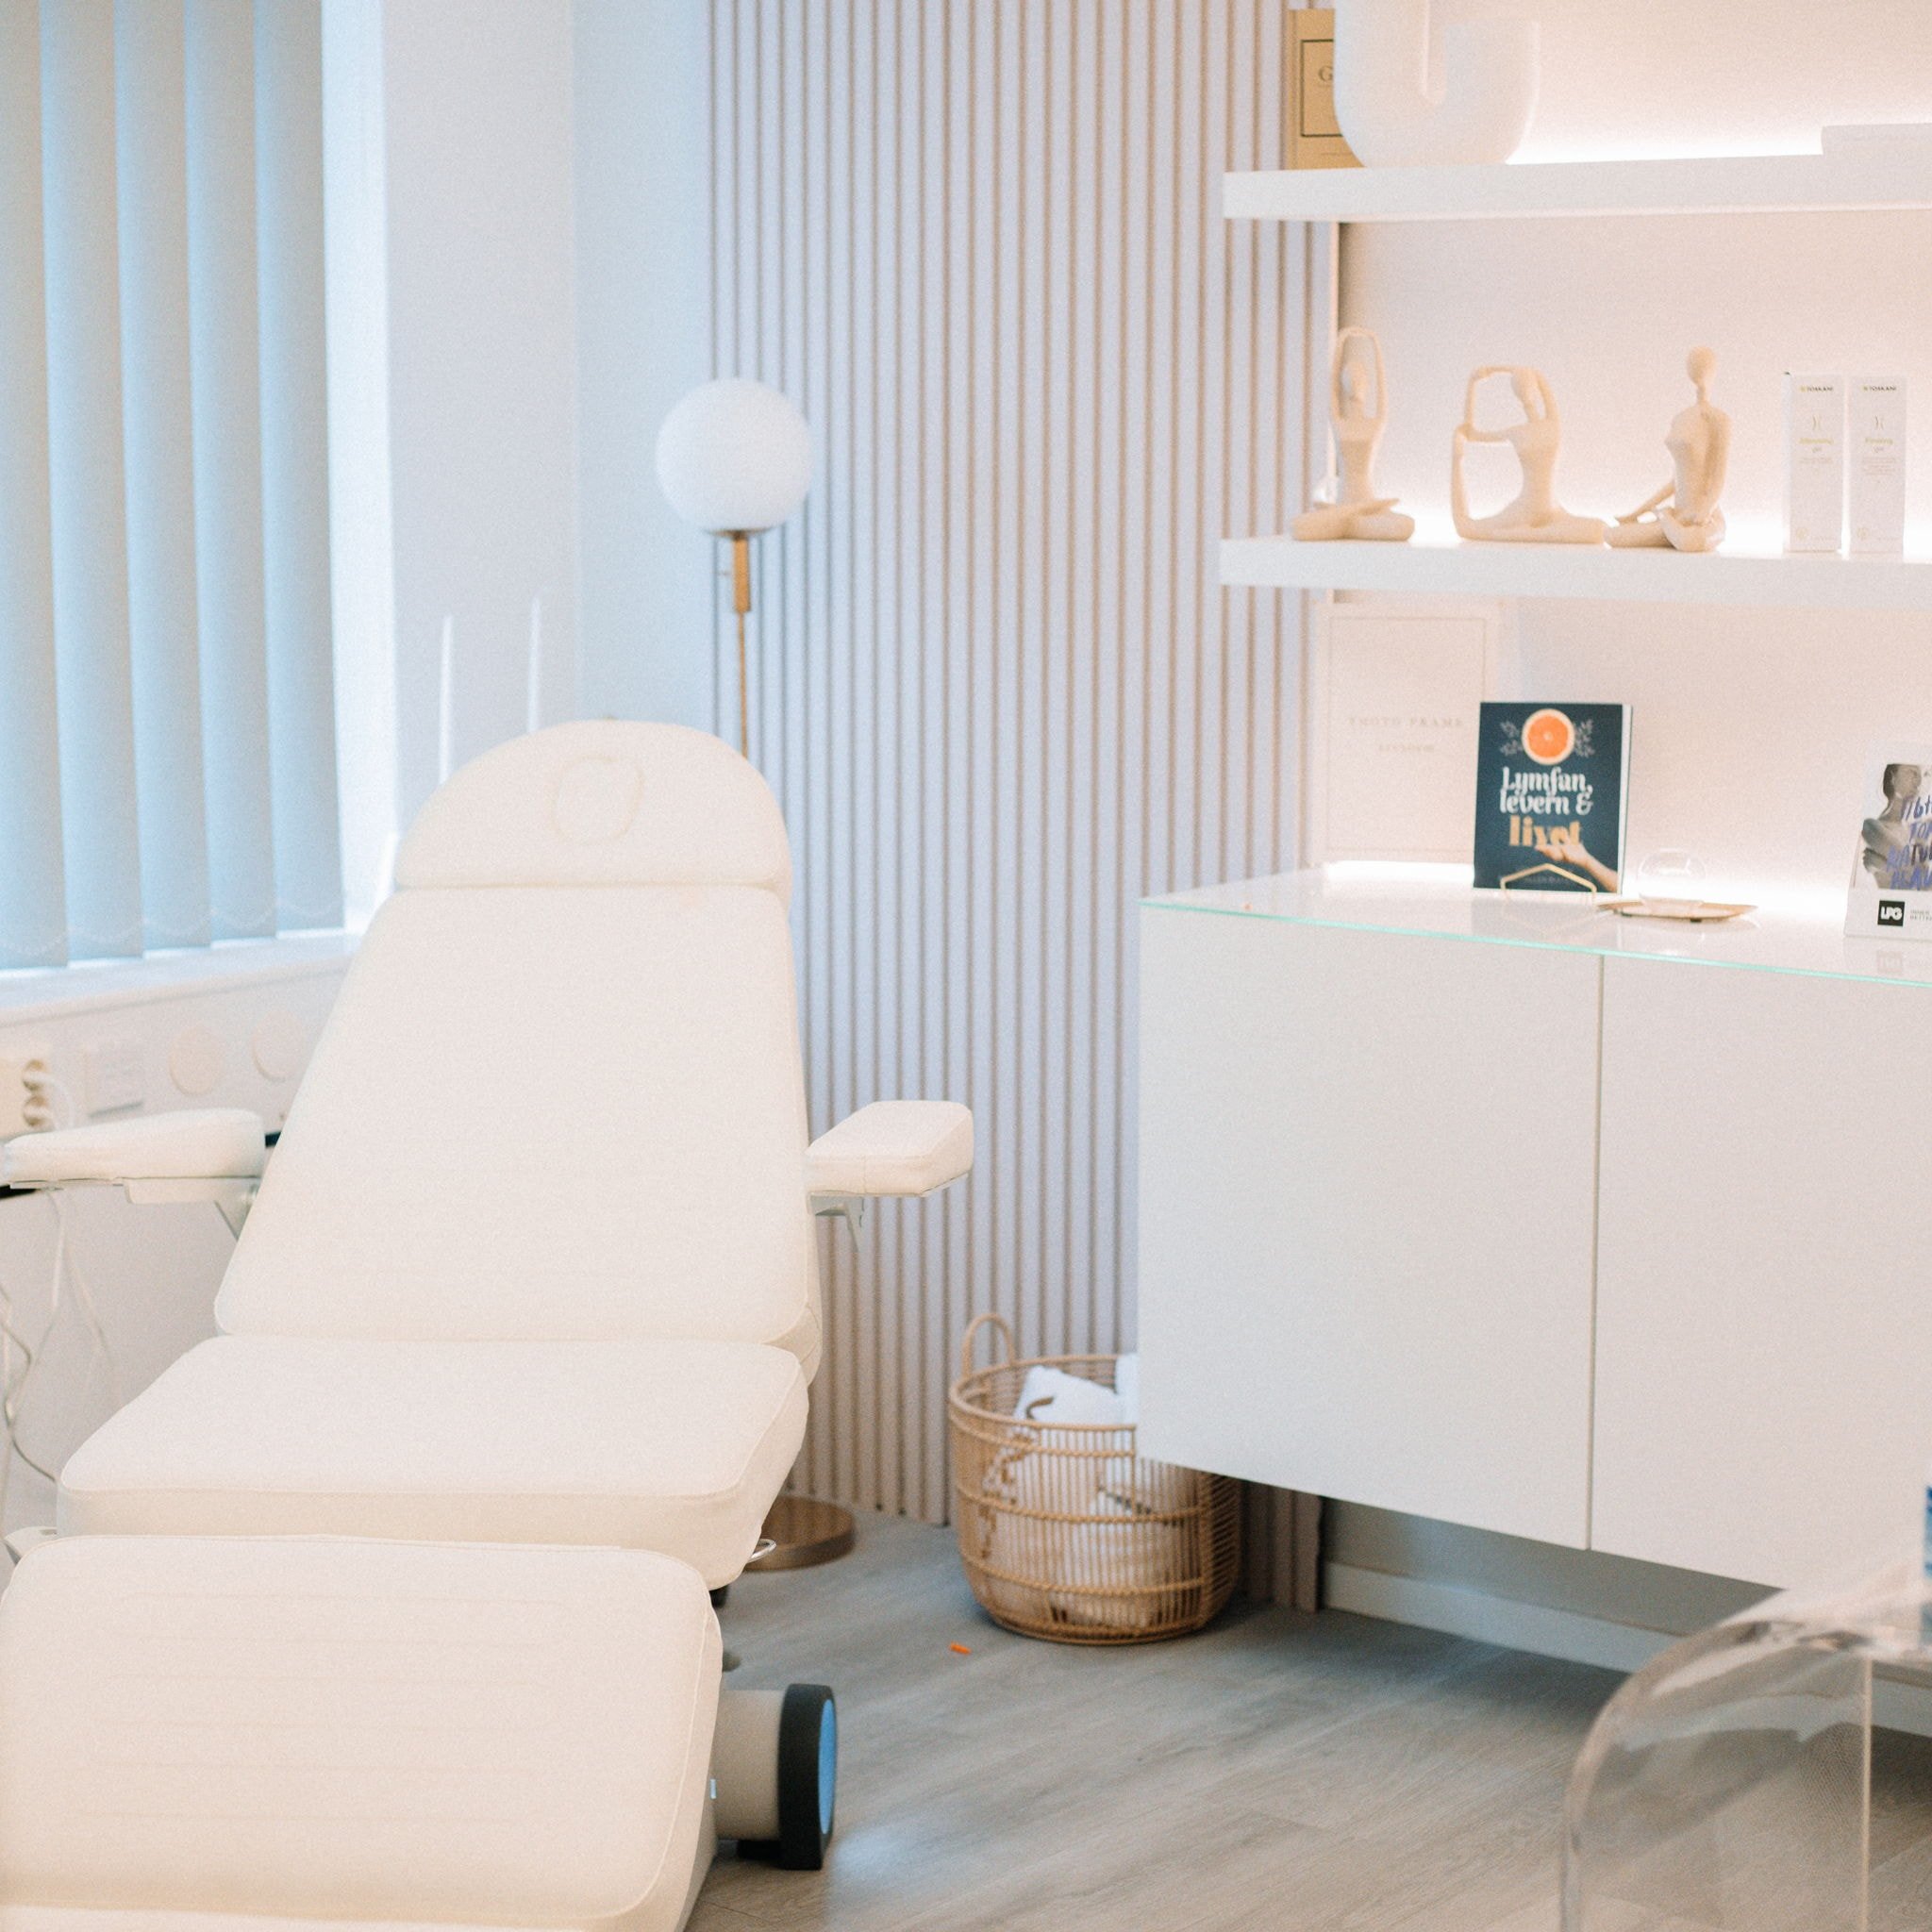 Permanent hårborttagning med diodlaser hos VIVACI Klinik i Solna (3 av 8)